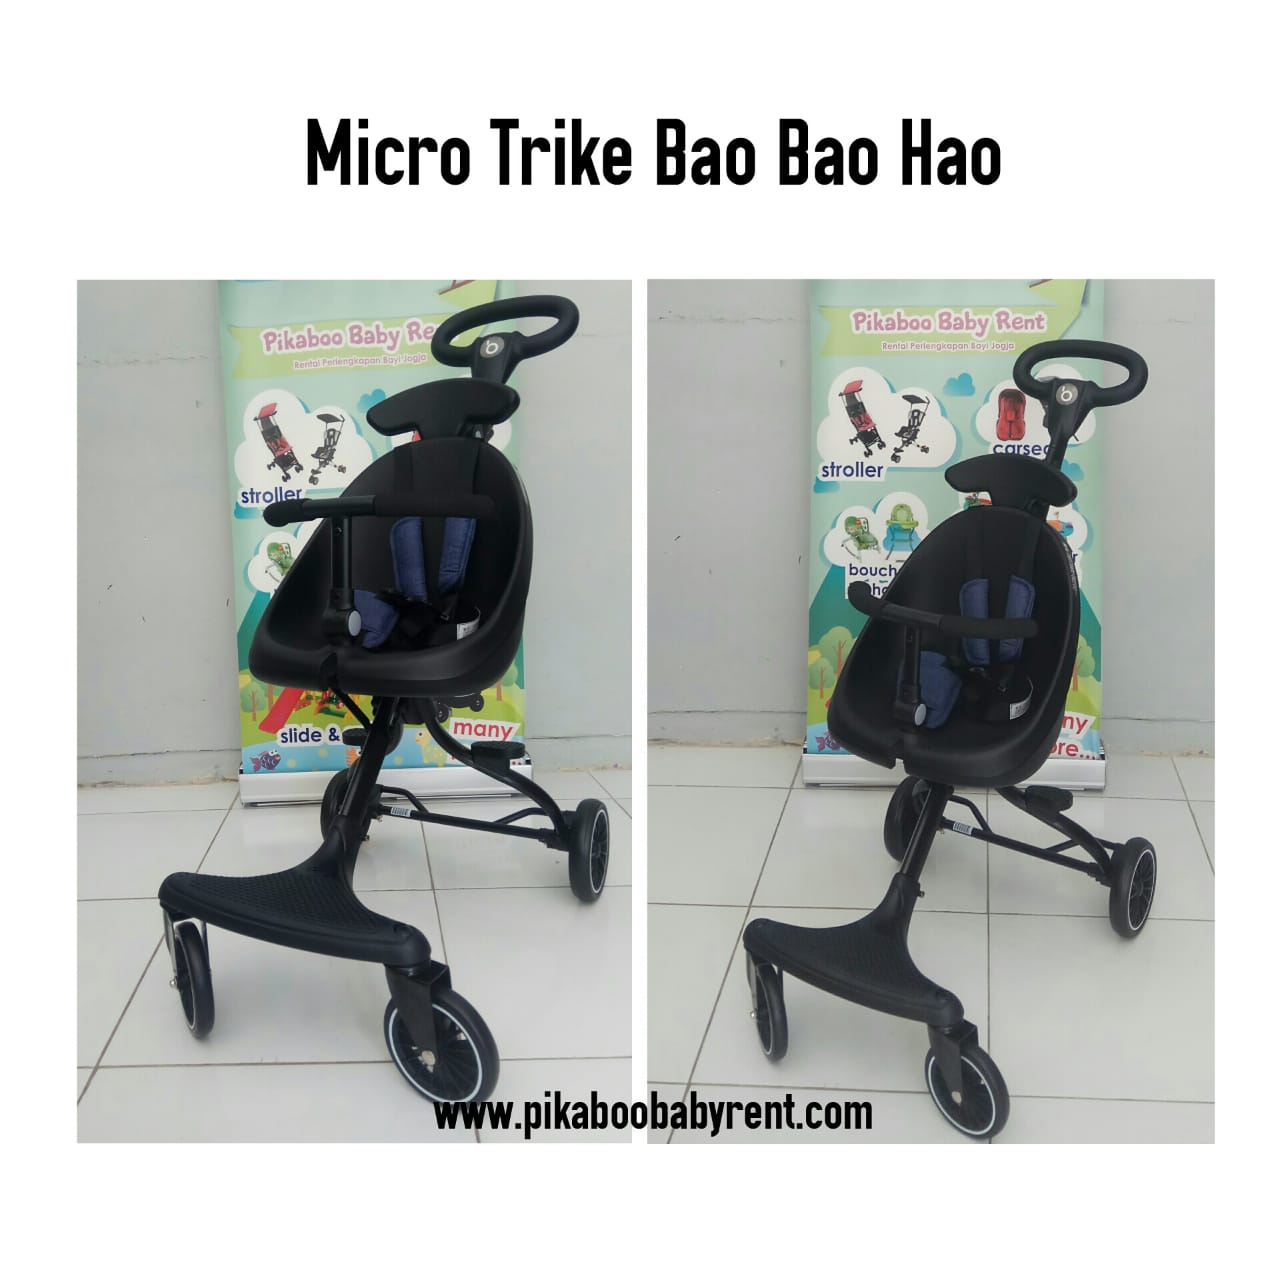 MICRO TRIKE BAO BAO HAO